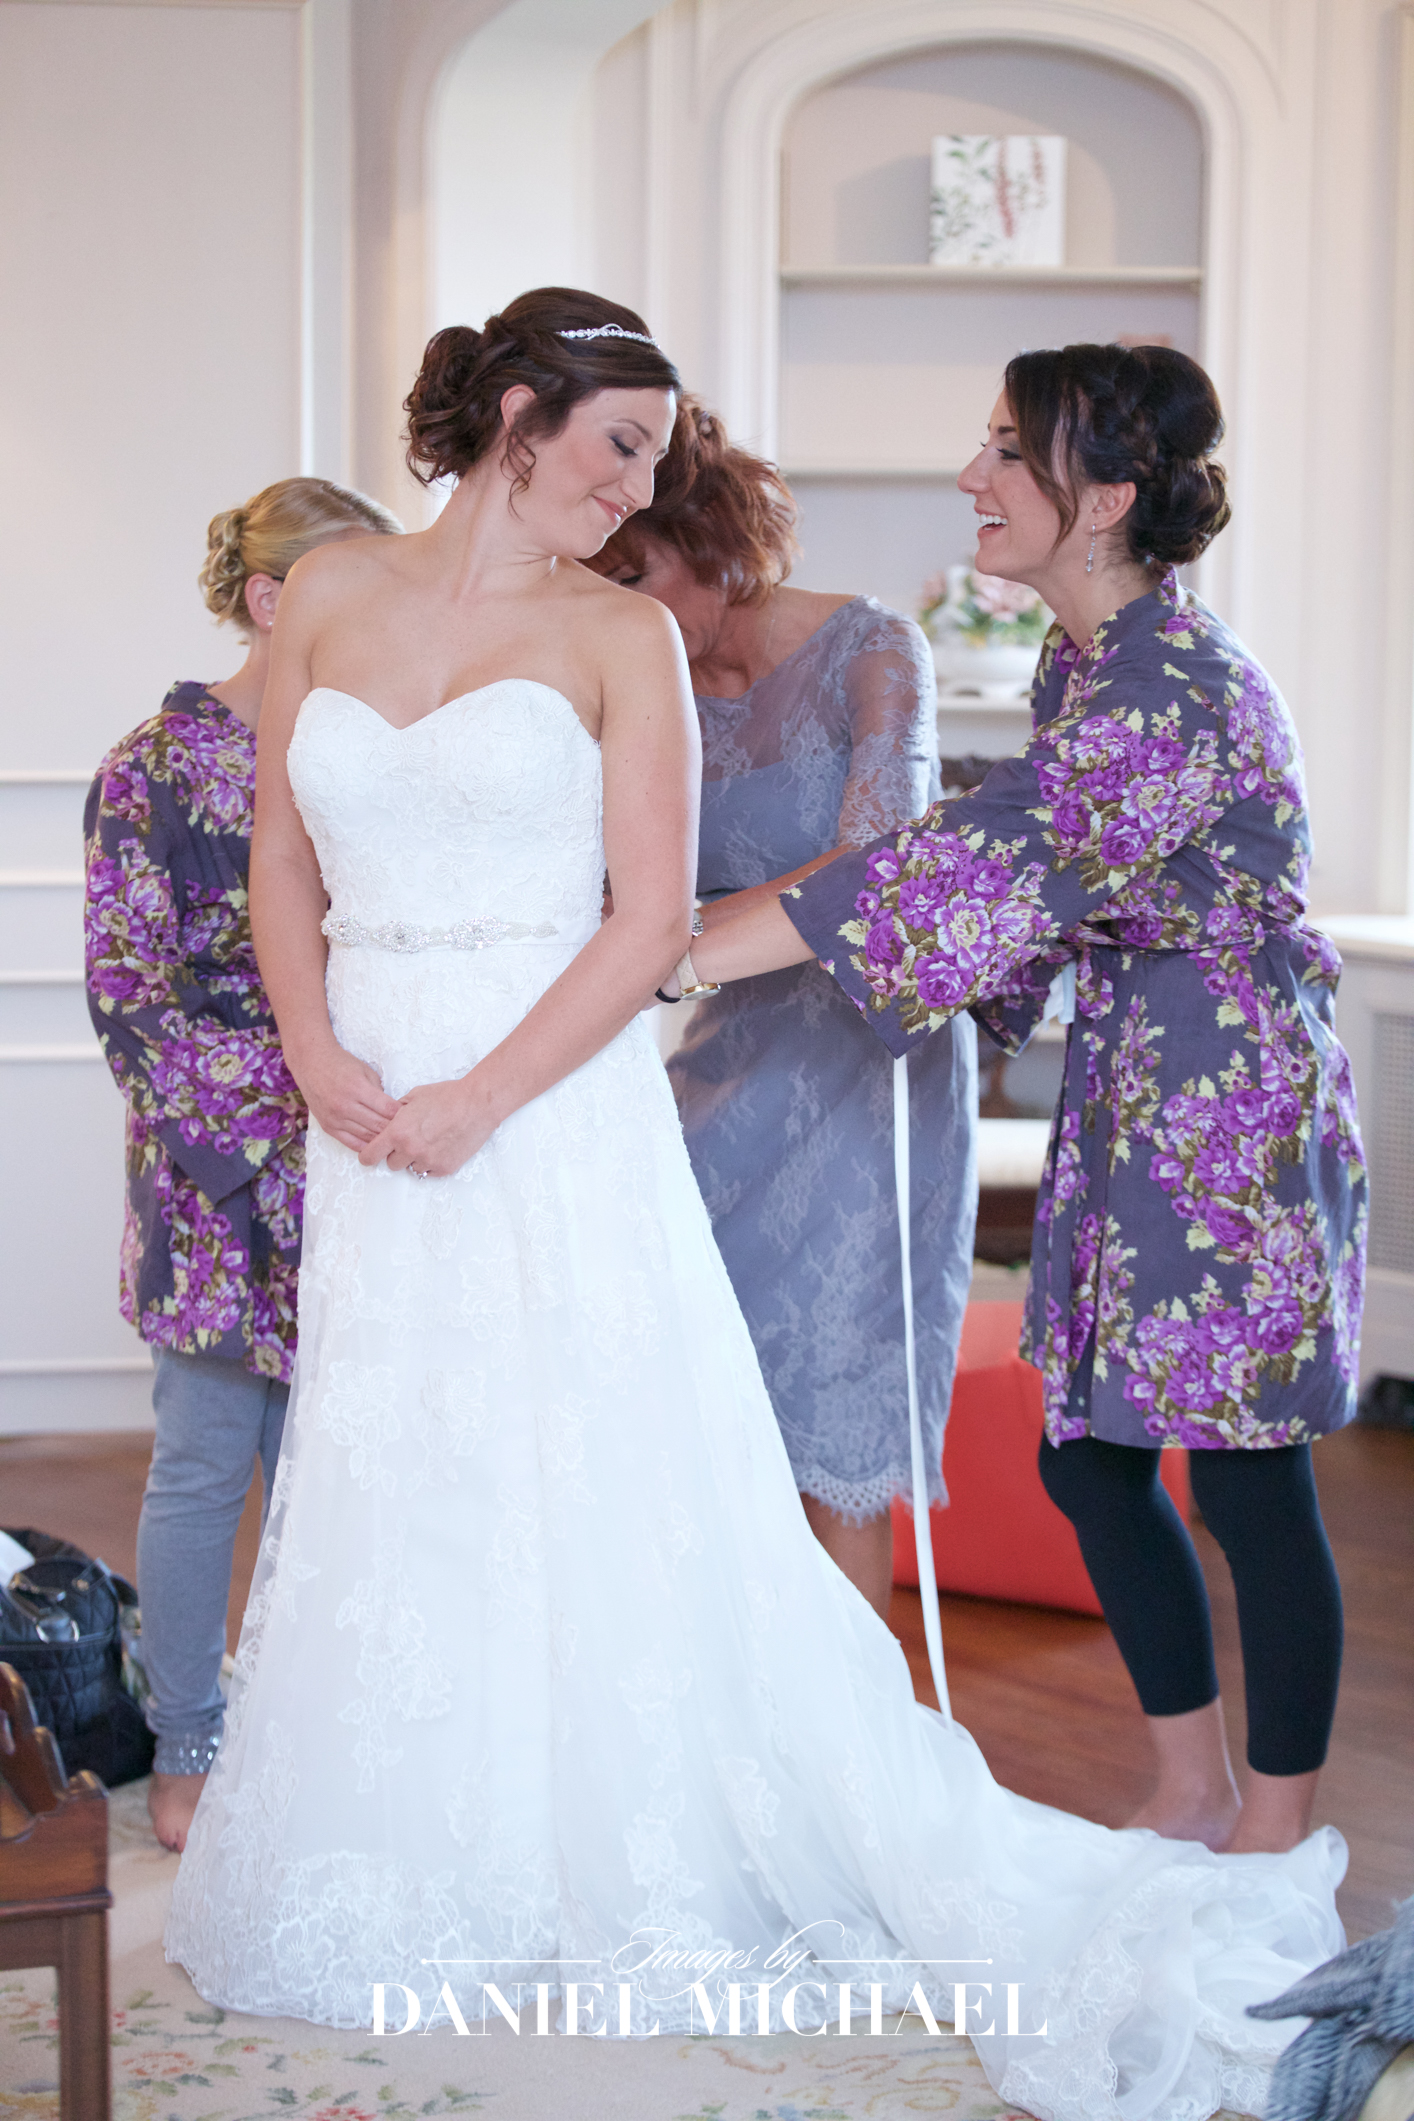 Pinecroft Venue Wedding Reception Photography